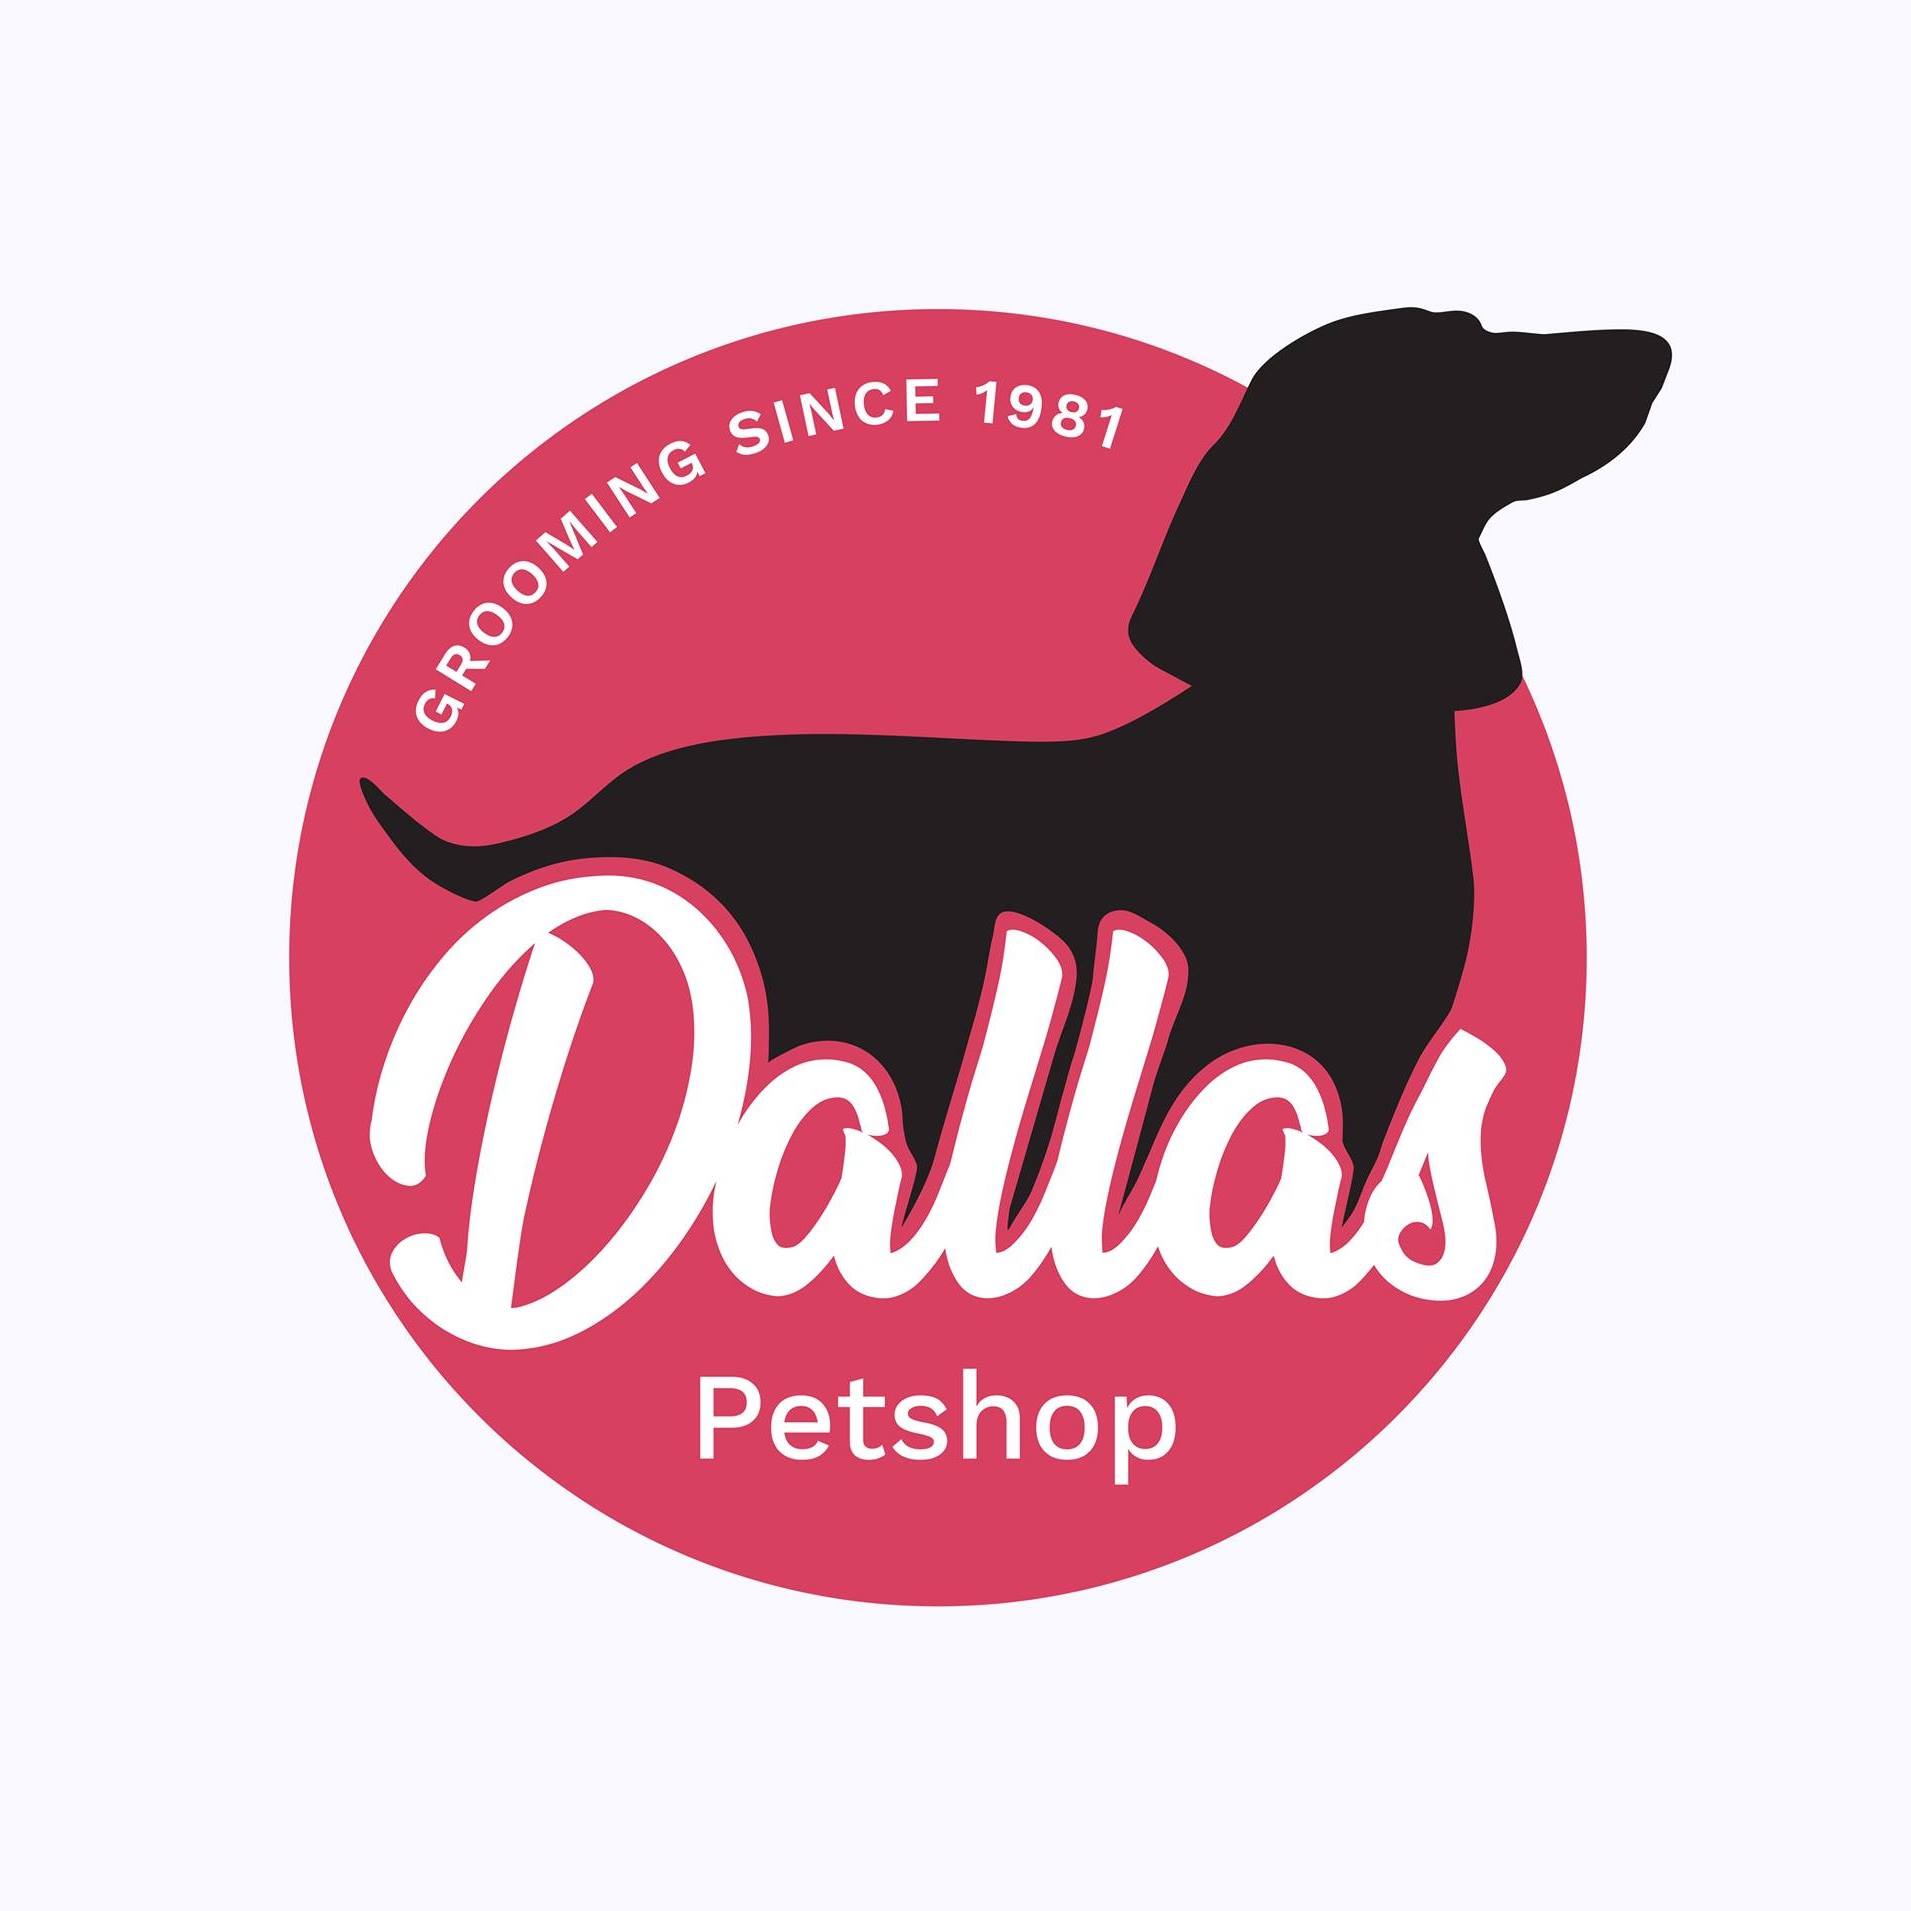 Petshop Dallas